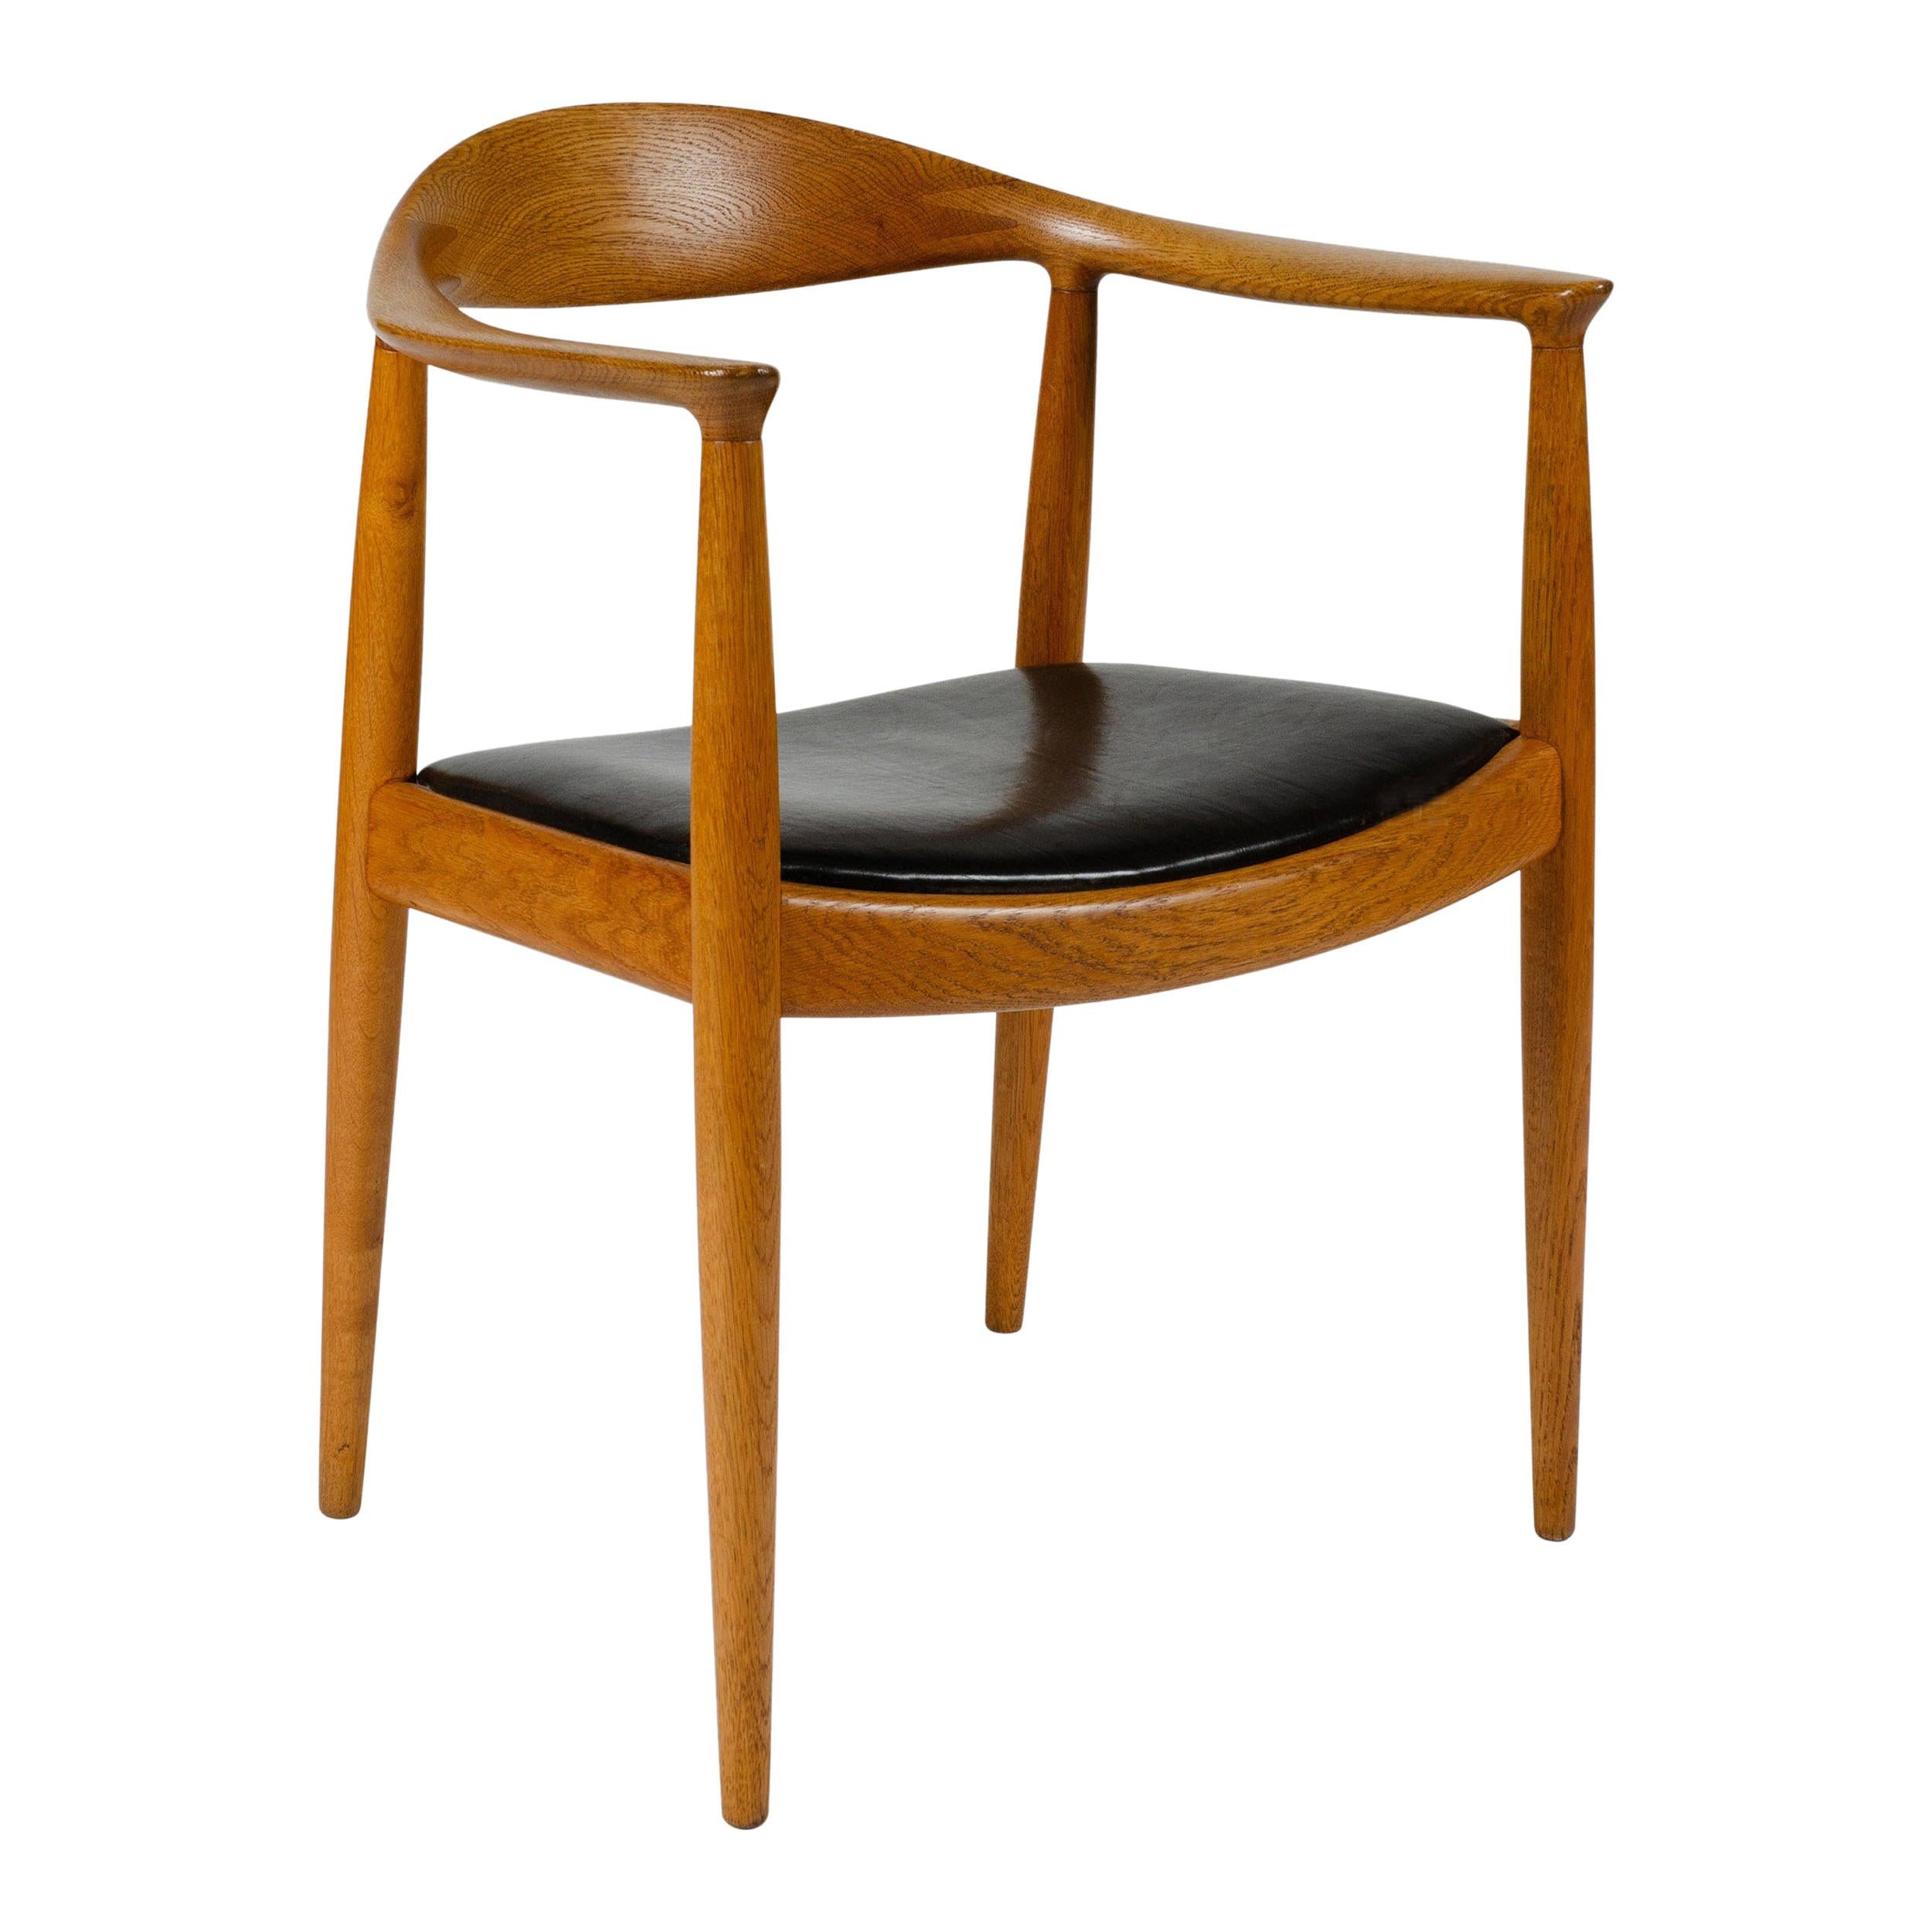 1970s Danish Round Chair by Hans J. Wegner for Johannes Hansen